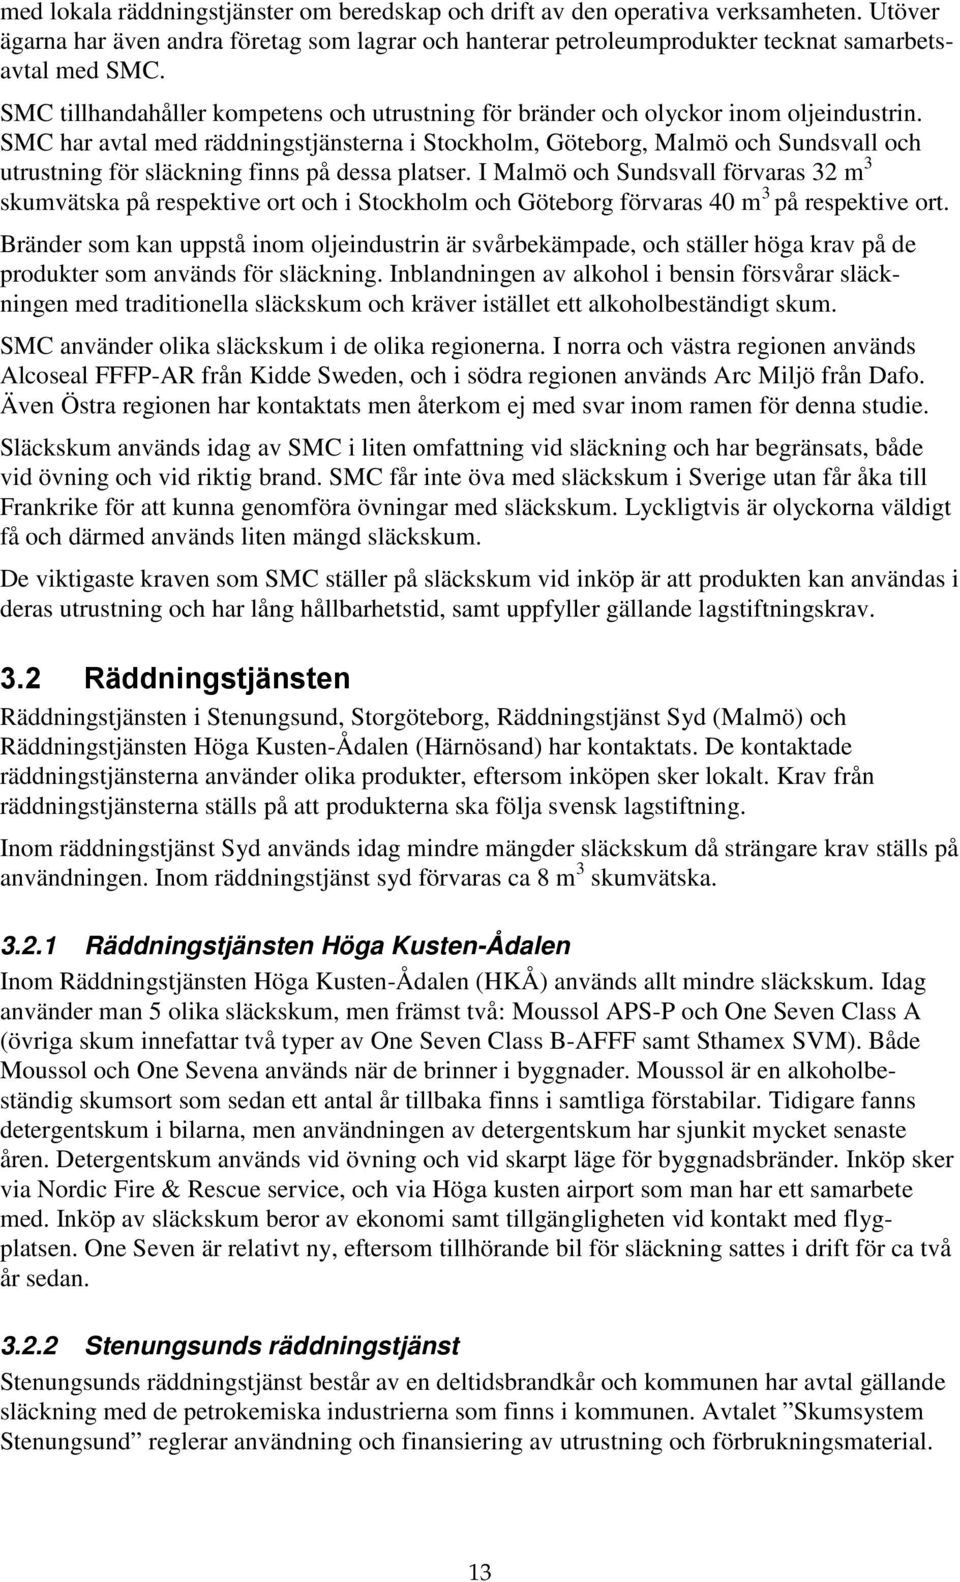 SMC har avtal med räddningstjänsterna i Stockholm, Göteborg, Malmö och Sundsvall och utrustning för släckning finns på dessa platser.